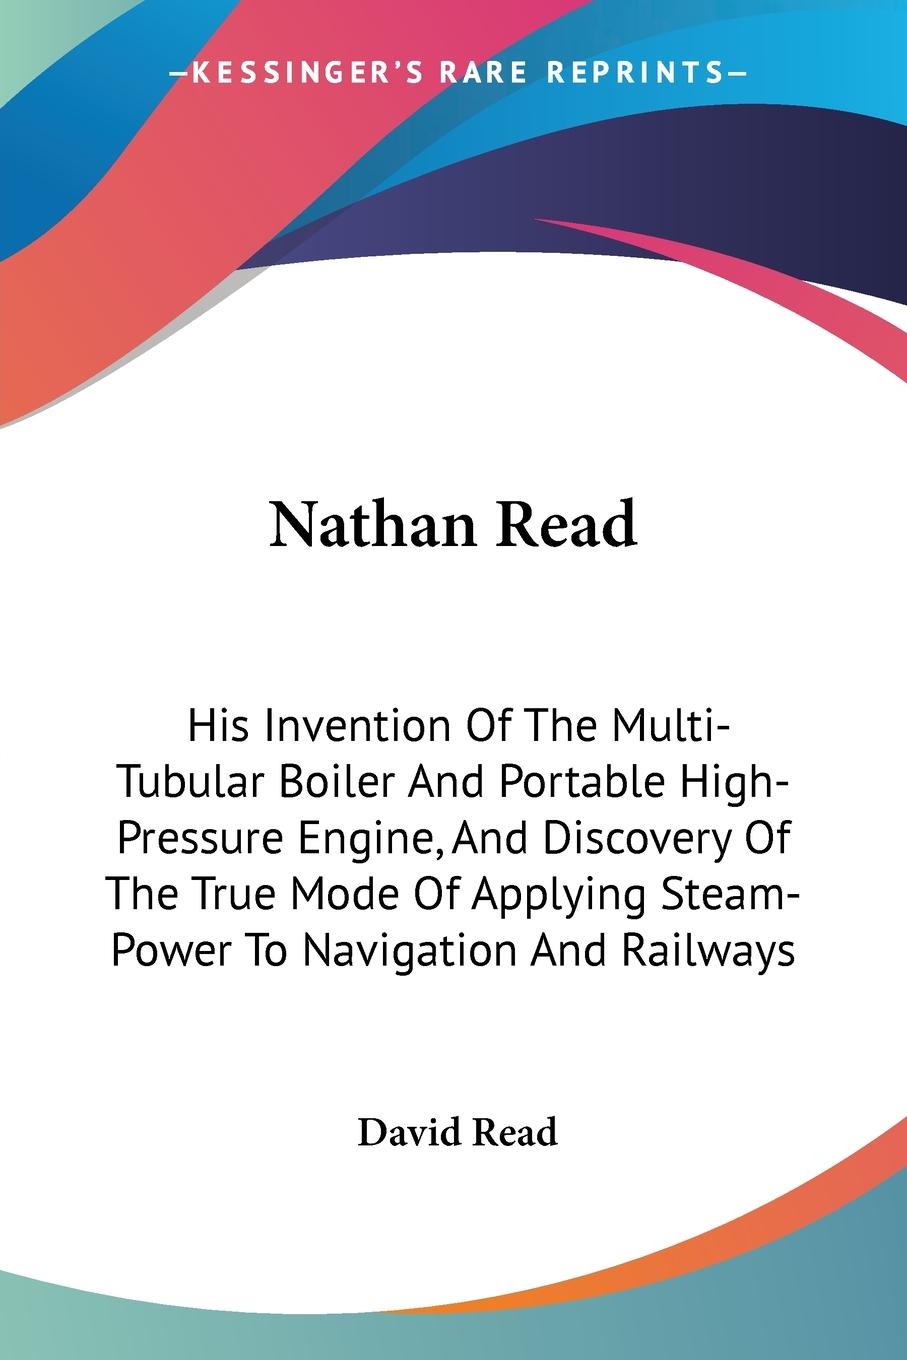 Nathan Read - Read, David